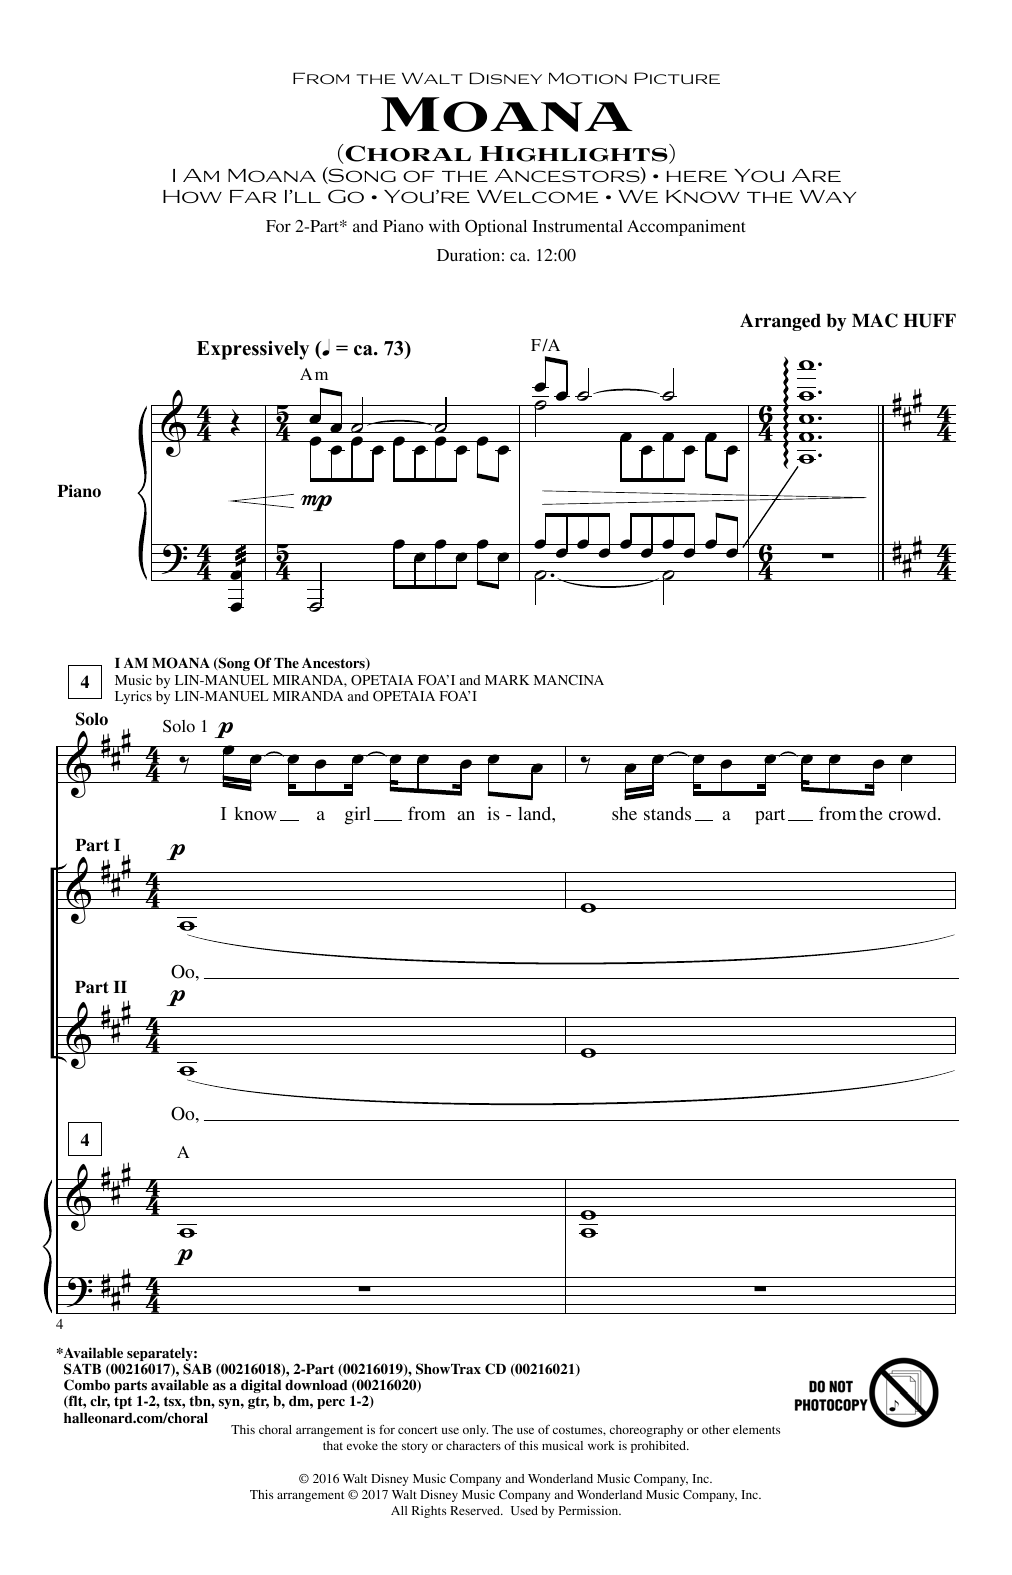 Mac Huff Moana (Choral Highlights) Sheet Music Notes & Chords for SAB - Download or Print PDF